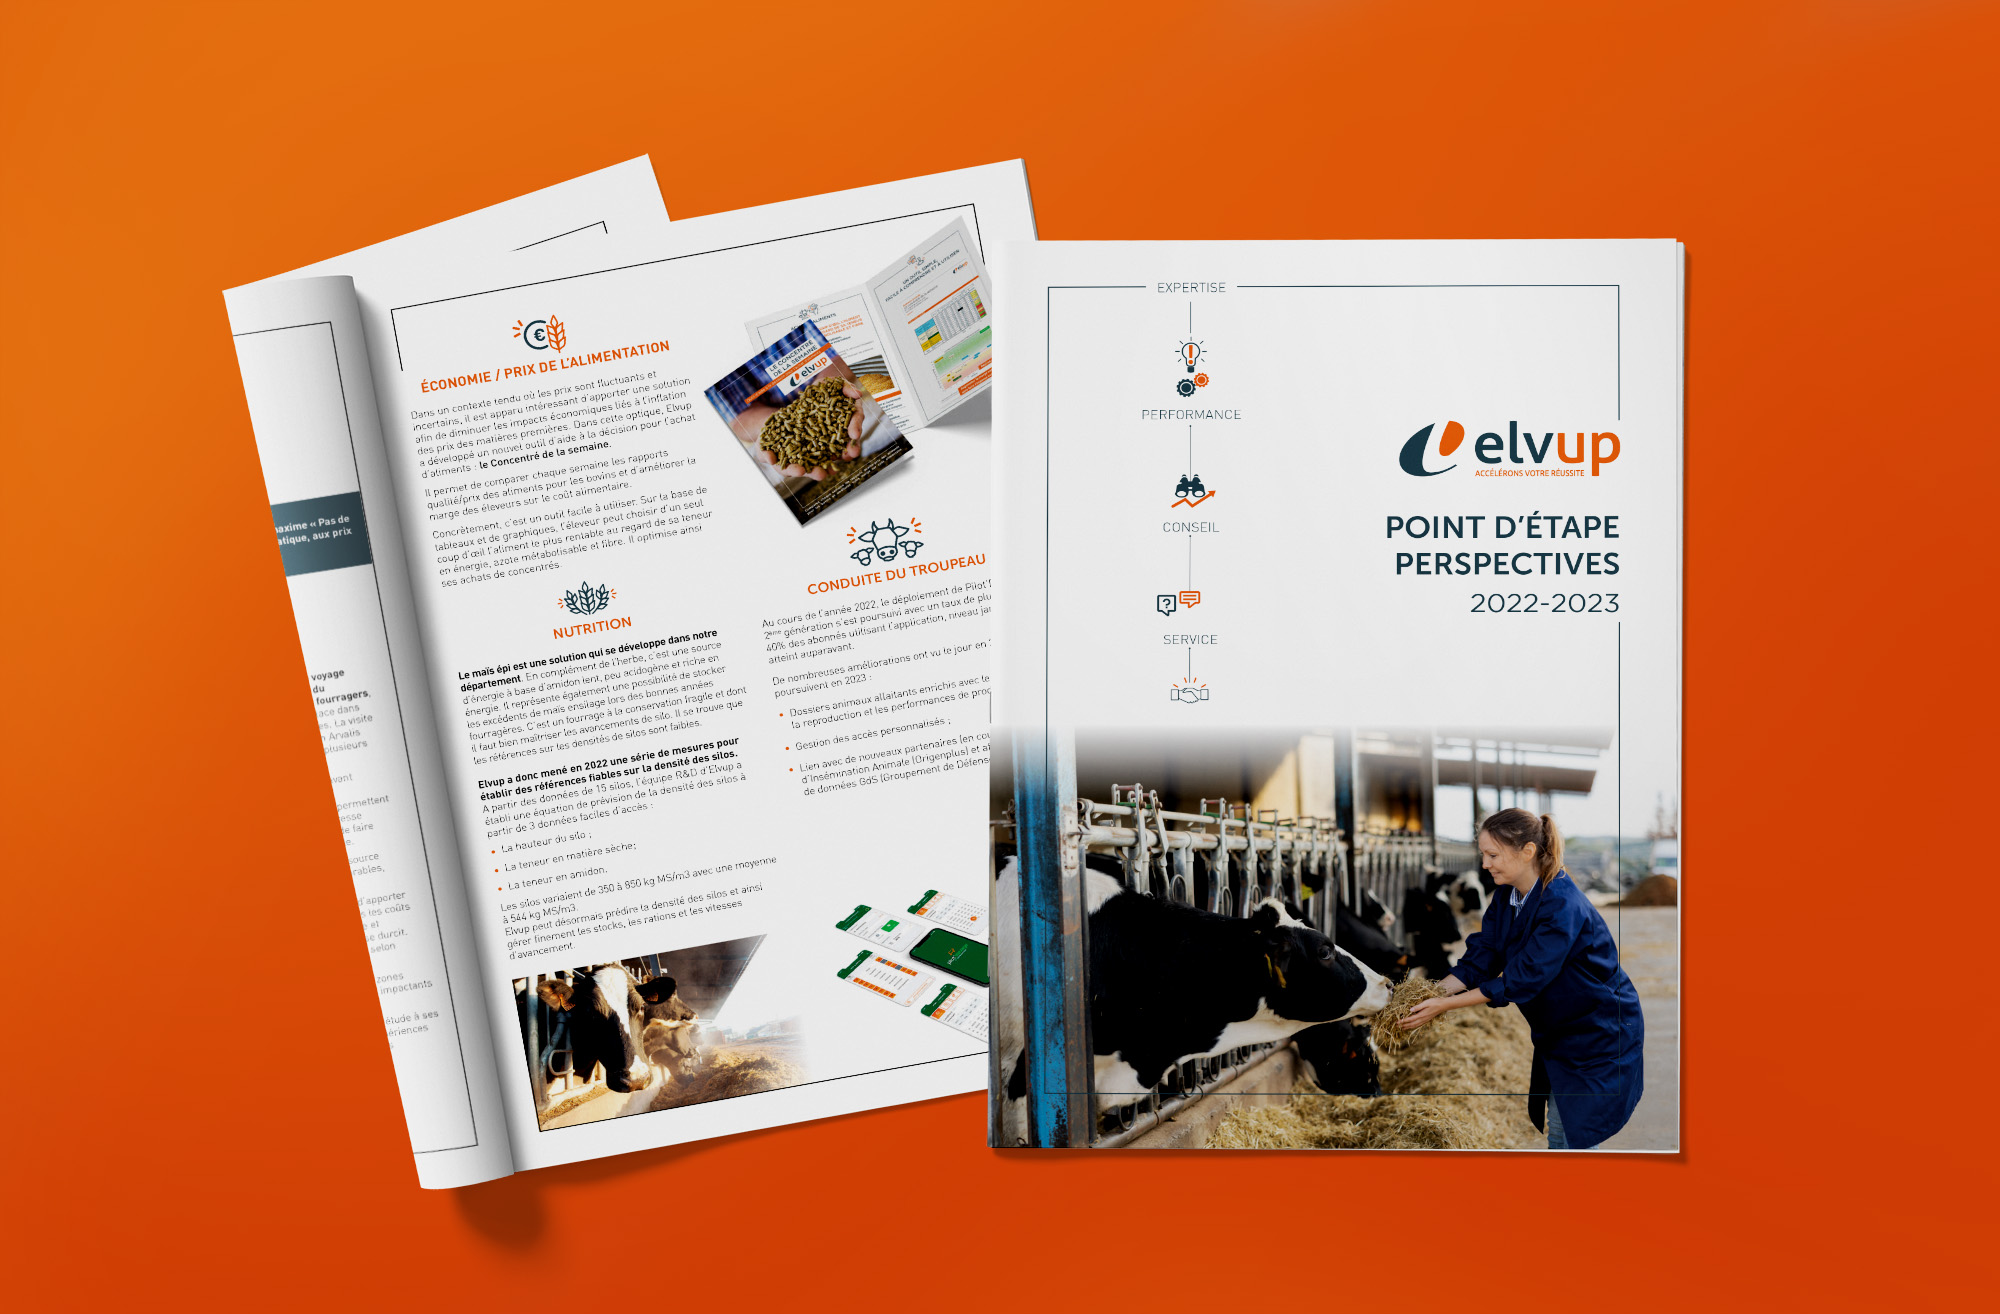 Arpub_ELVUP_Rapport d'activite_agriculture_Union elevage_vaches_ferme